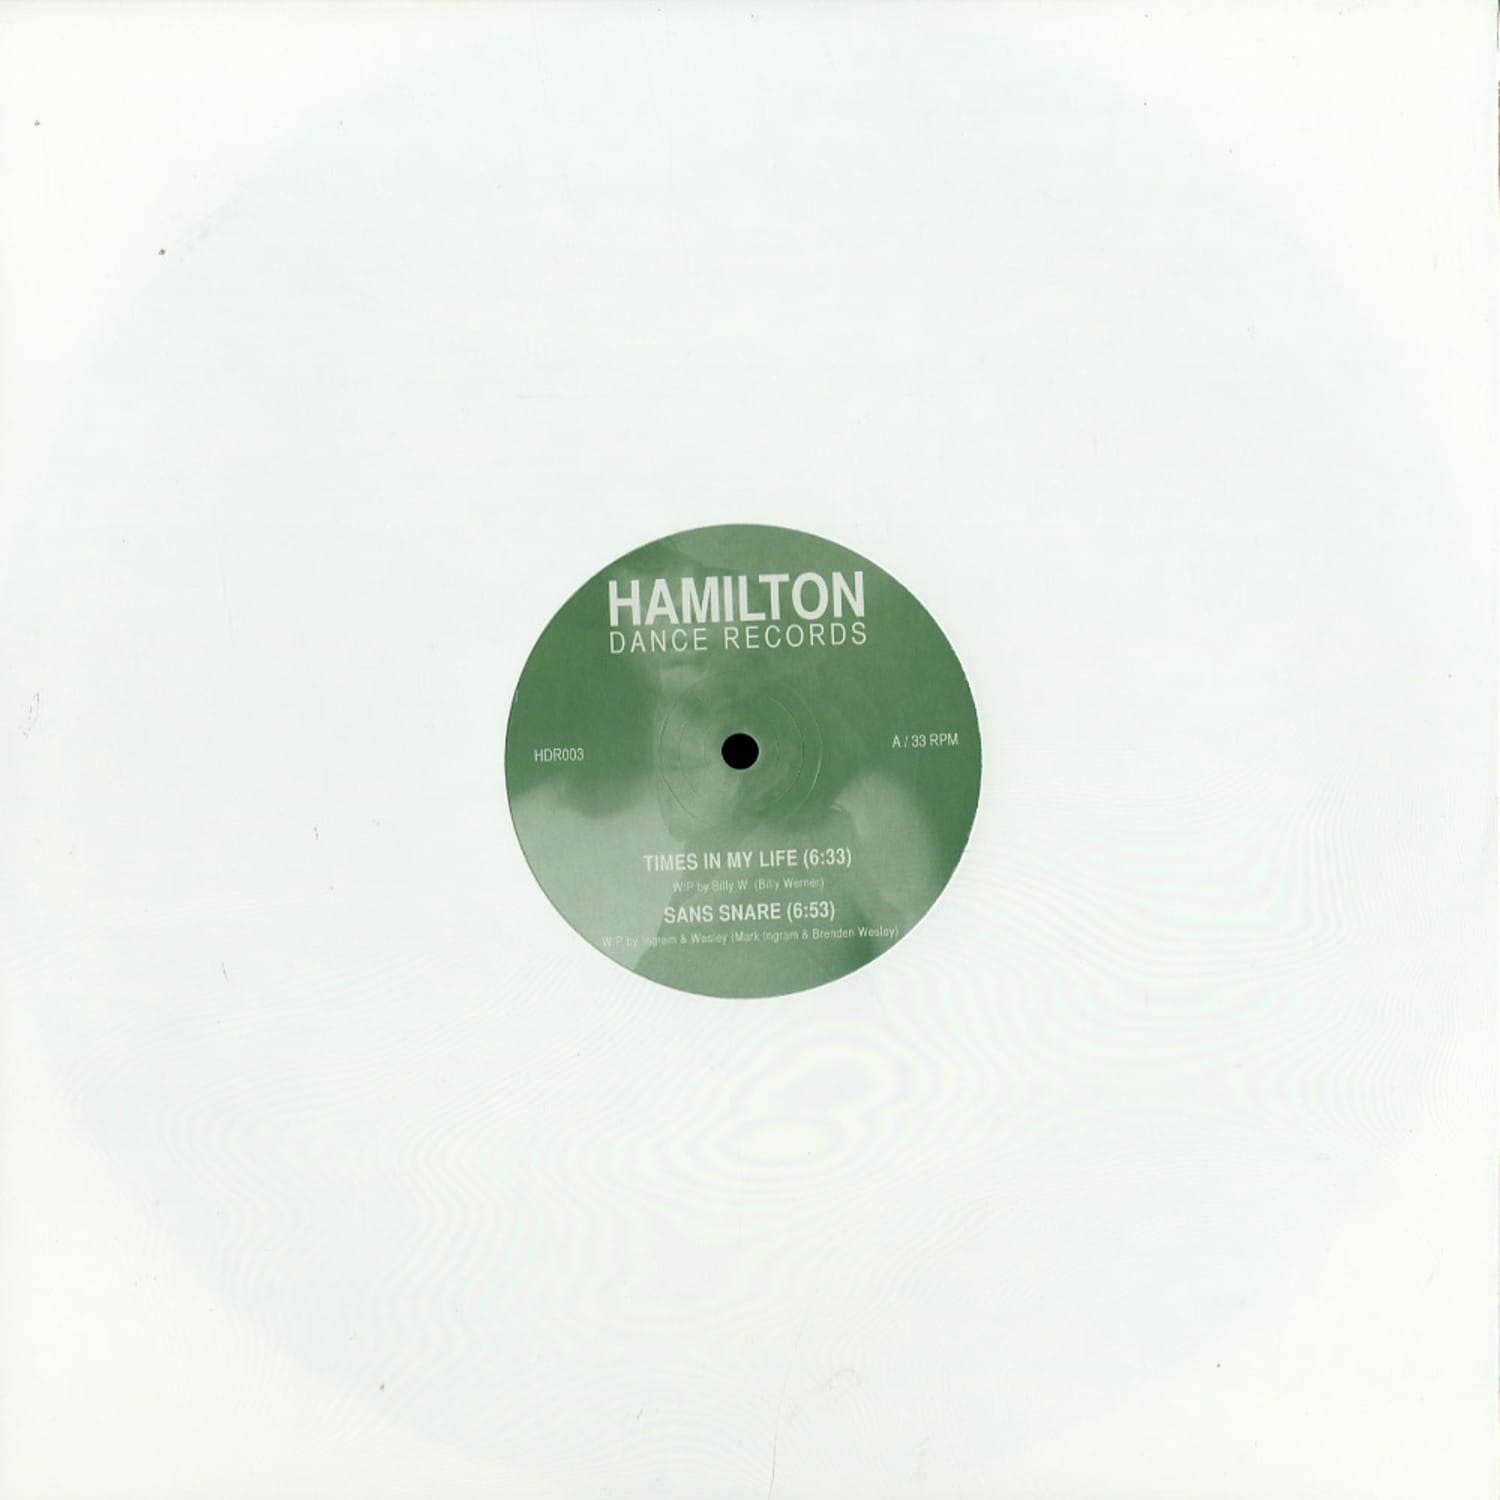 HAMILTON DANCE RECORDS 003